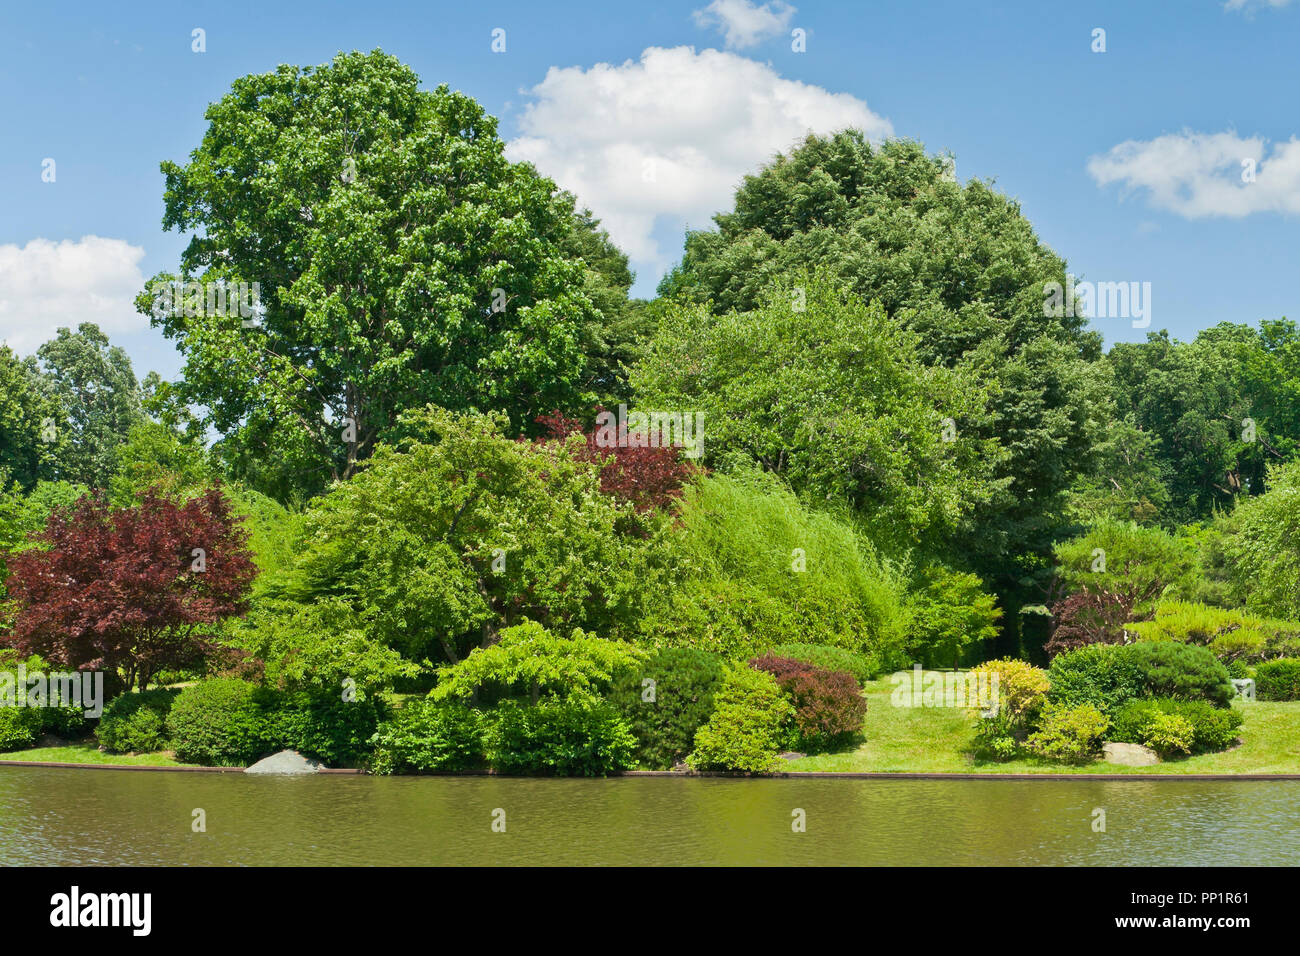 ST. LOUIS - 12 giugno: Bright puffy nuvole nel cielo blu sopra il lago nel giardino giapponese in corrispondenza del giardino botanico del Missouri su una metà di giugno giornata estiva, 2 Foto Stock